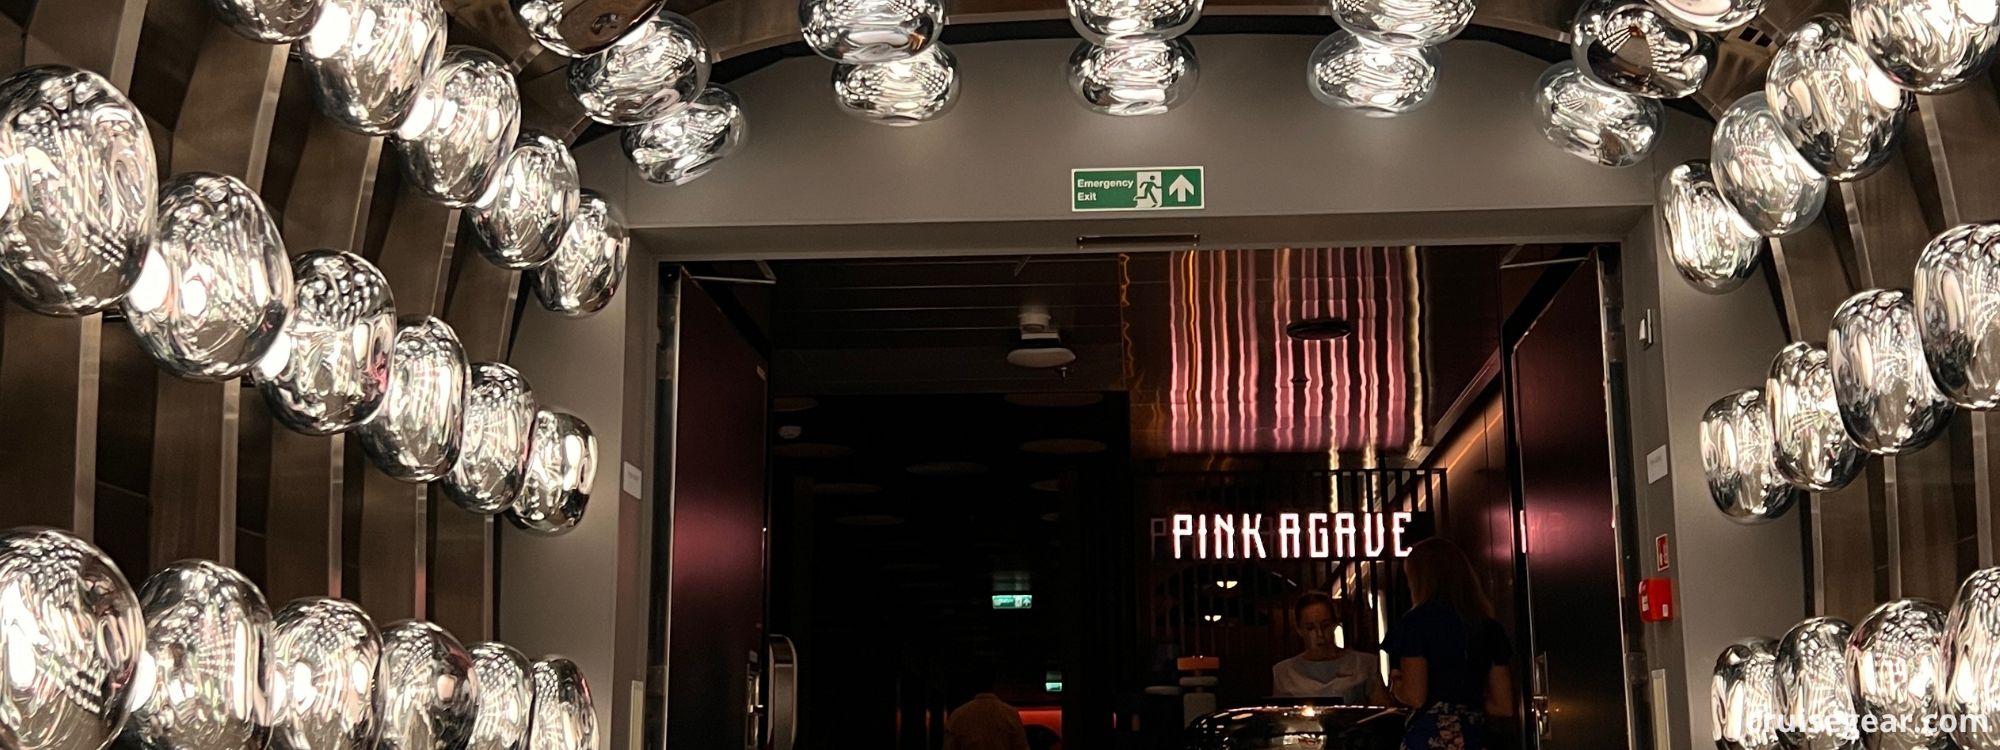 Pink Agave Virgin Voyages Menu, 360 Virtual Tour & More